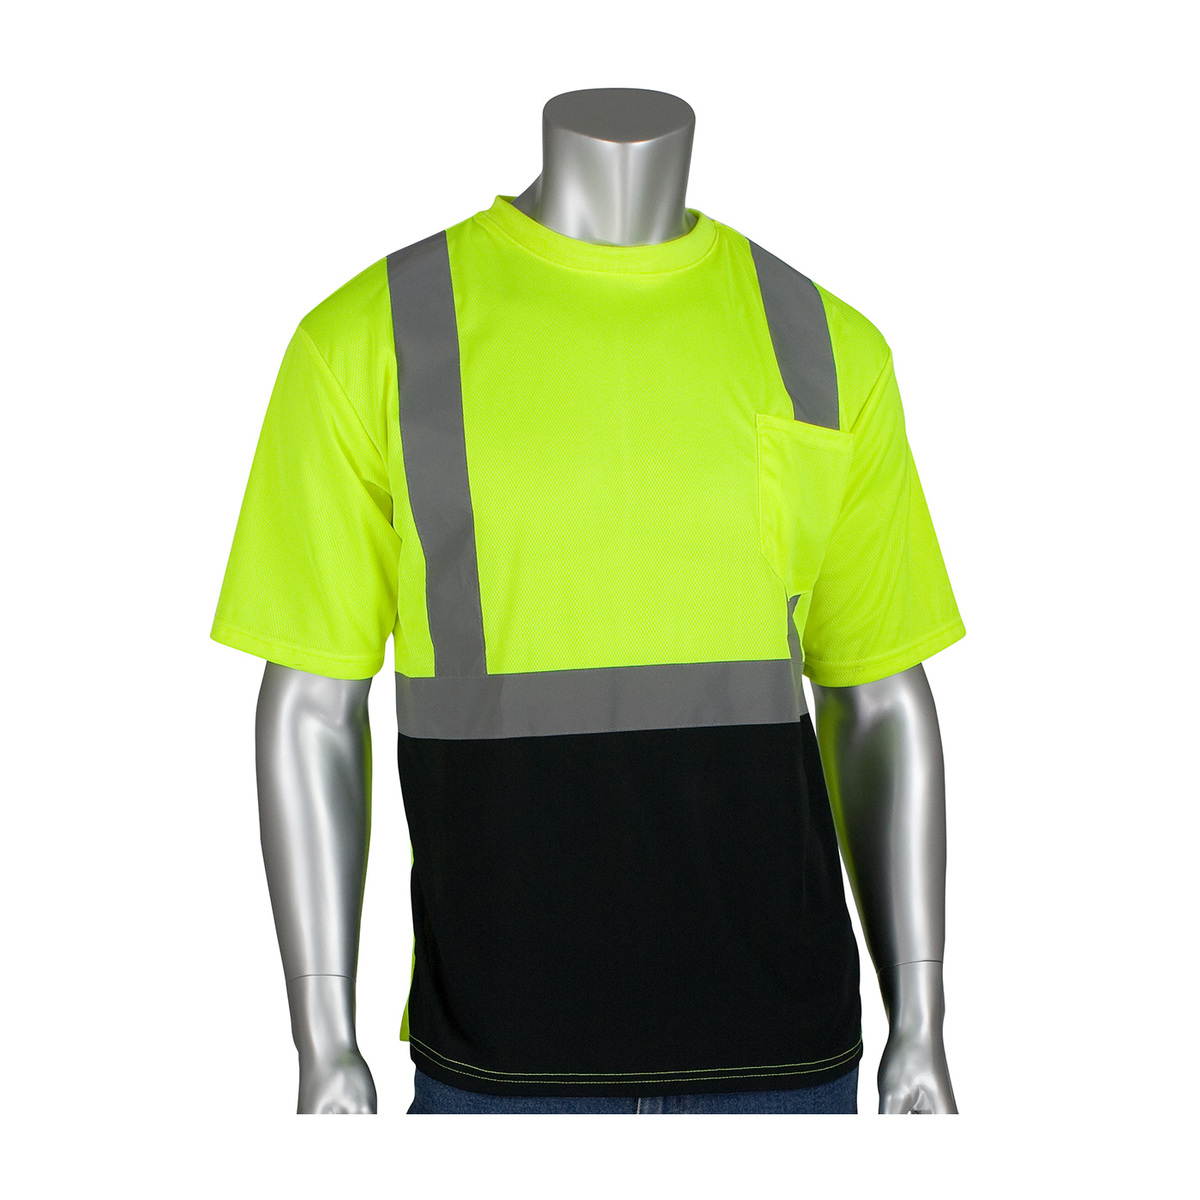 PIP® Medium Hi-Viz Yellow/Hi-Viz Orange 1 Polyester/Birdseye Mesh Two-Tone Short Sleeve Shirt